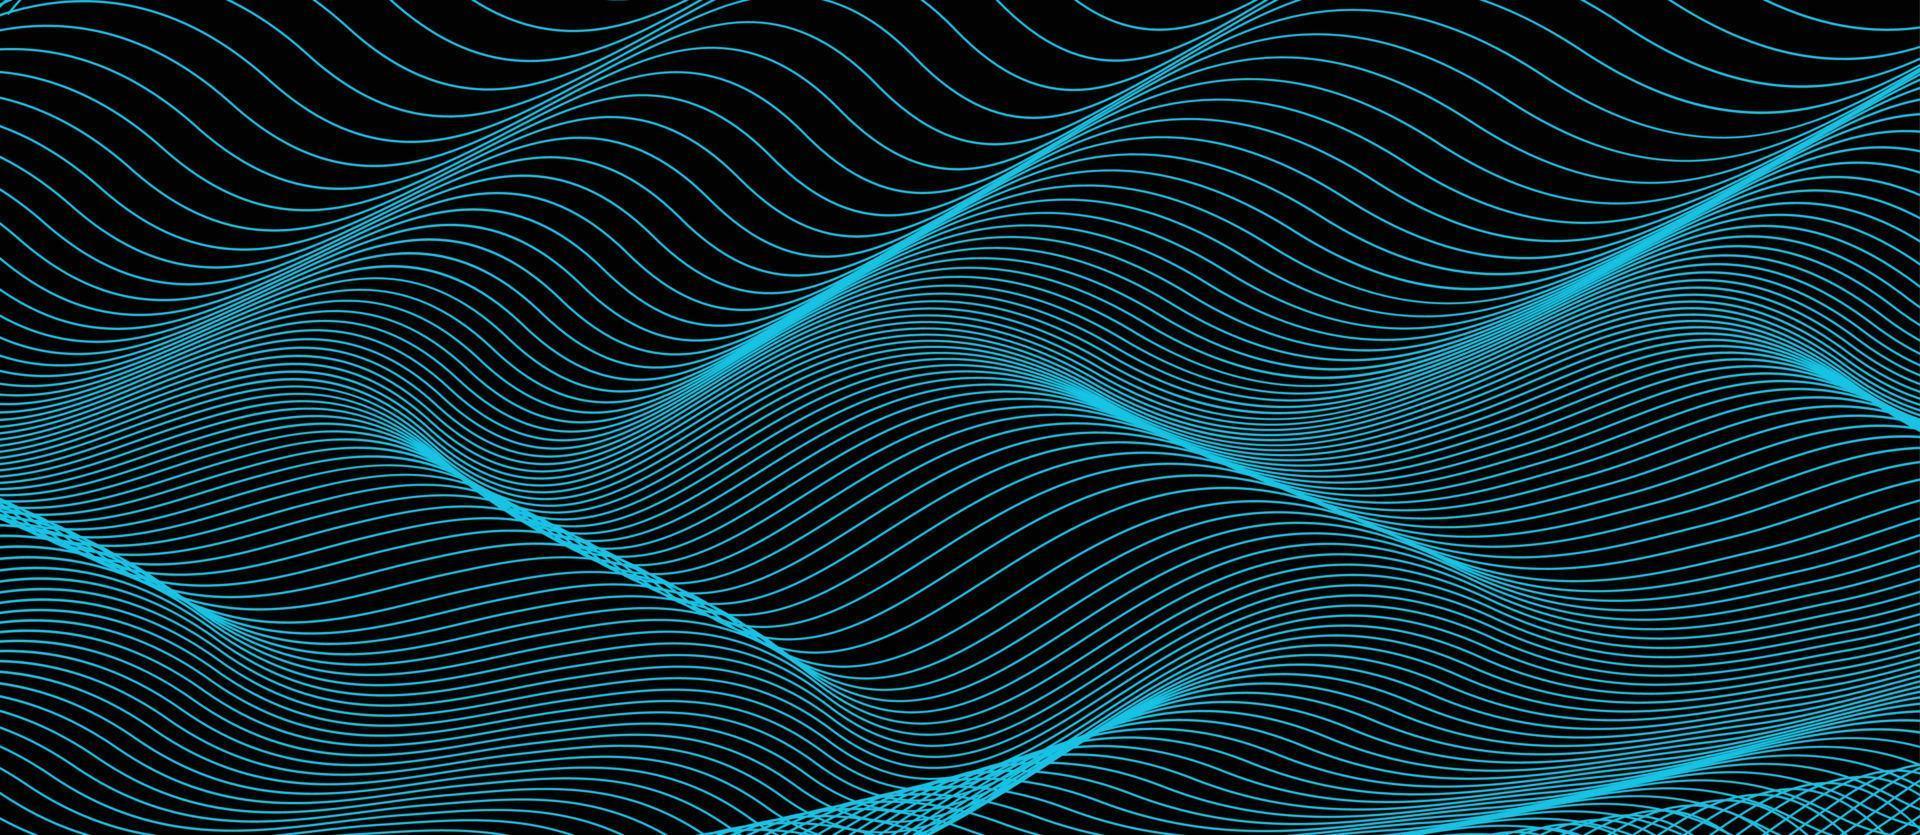 abstrato azul-petróleo escuro com onda de luz. cenário de água turquesa turva. ilustração vetorial para seu design gráfico vetor